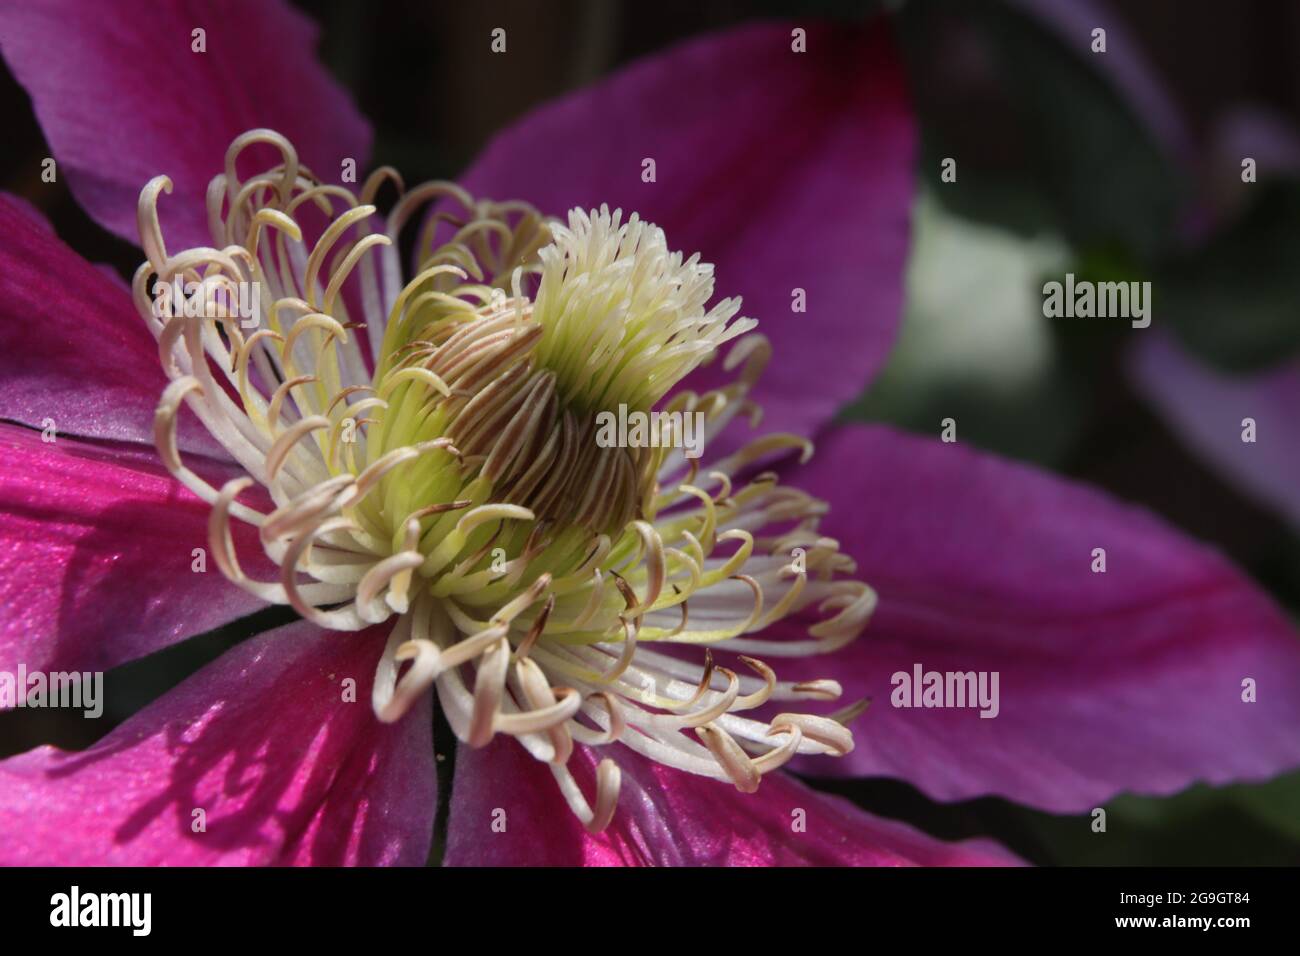 Die Makro-Aufnahme zeigt beeindruckende details der Clematis-Blüte (Klematis, Waldrebe) Stock Photo